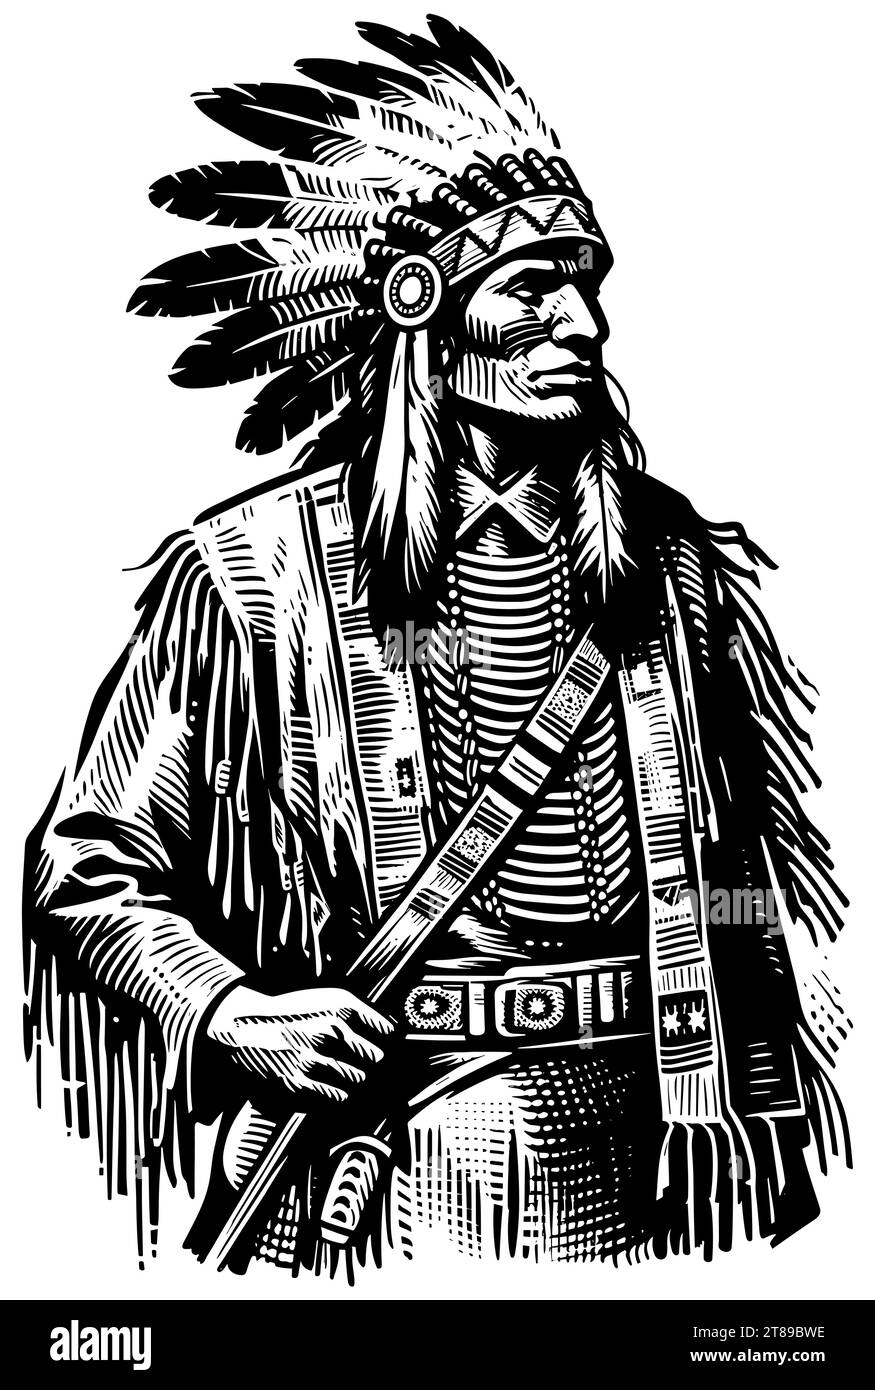 Linolschnitt-Illustration eines Häuptlings der Ureinwohner in traditioneller Kleidung mit gefiedertem Kopfschmuck. Stock Vektor